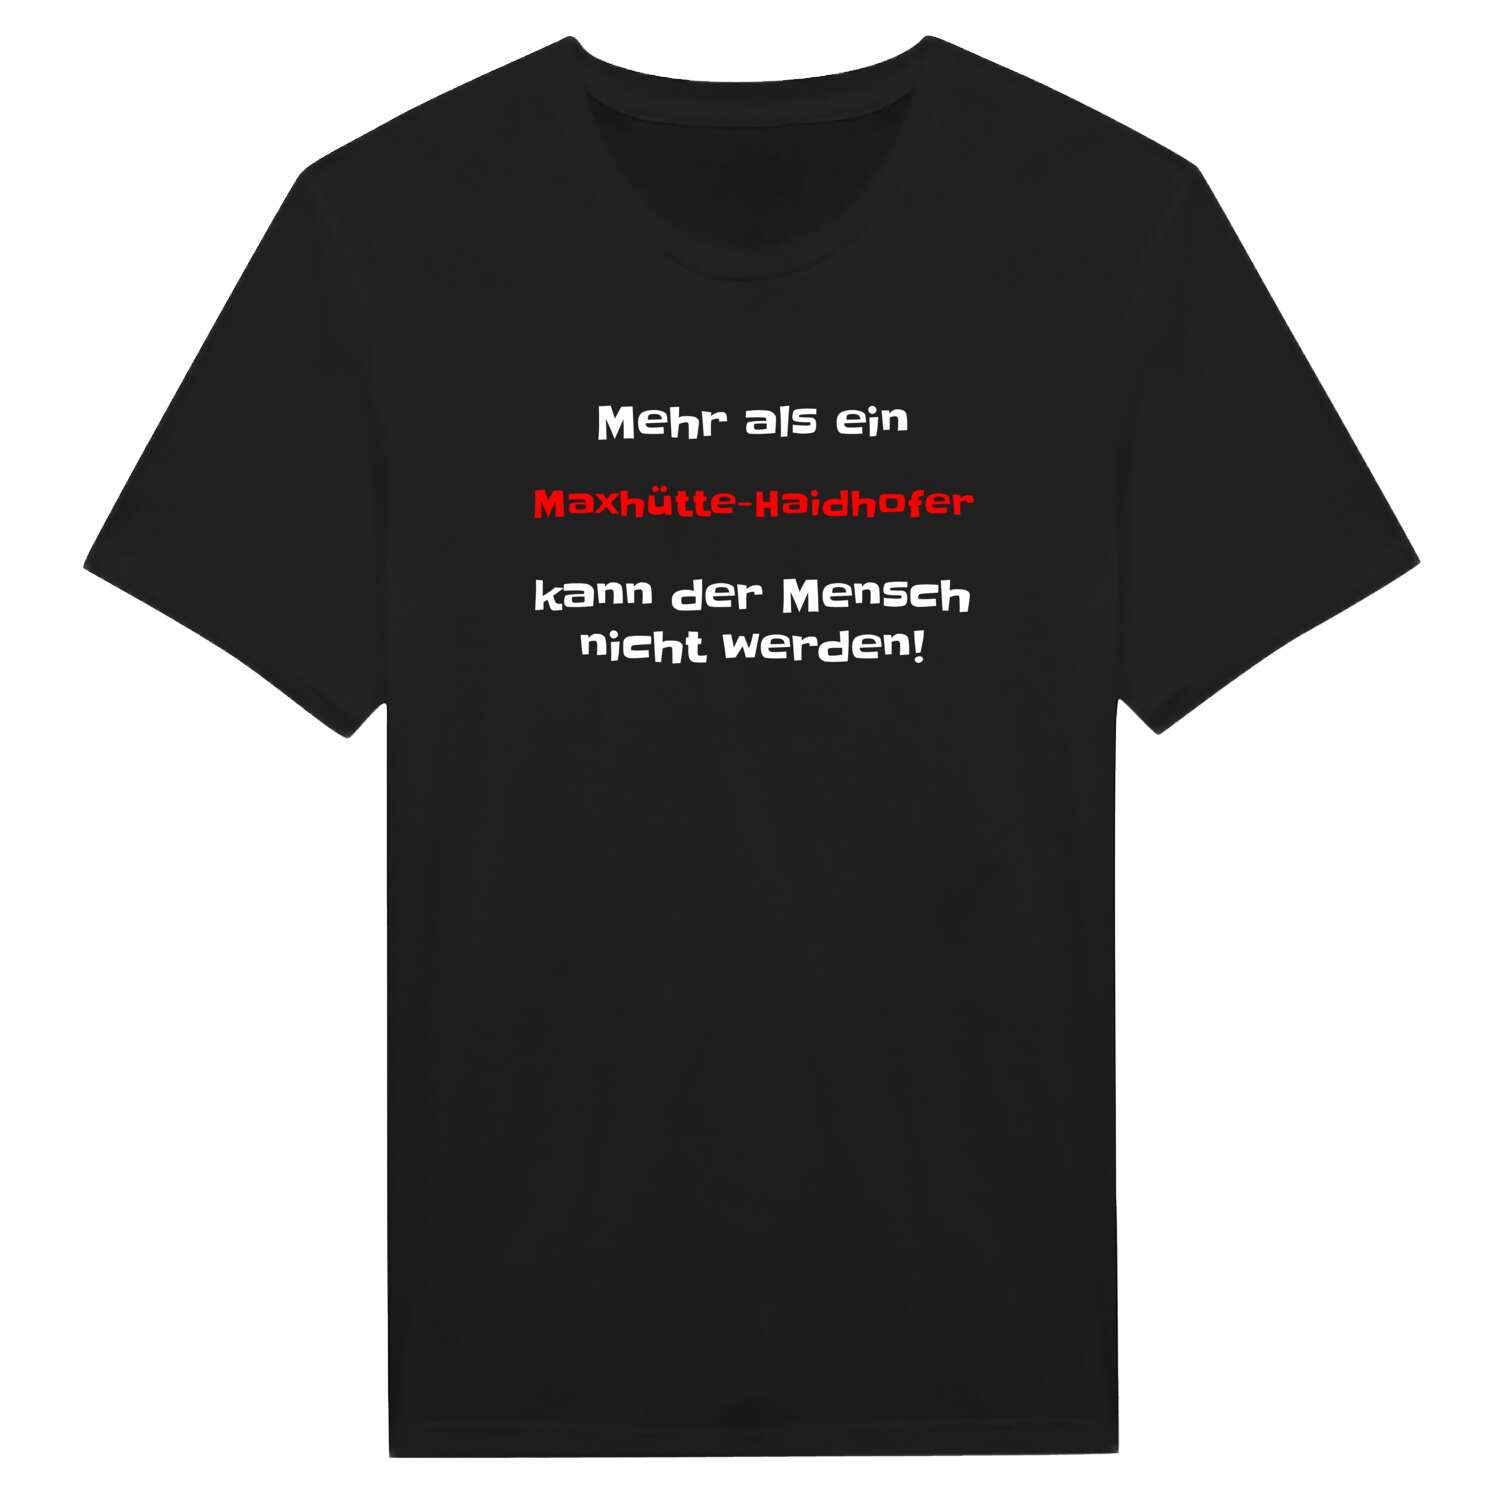 Maxhütte-Haidhof T-Shirt »Mehr als ein«